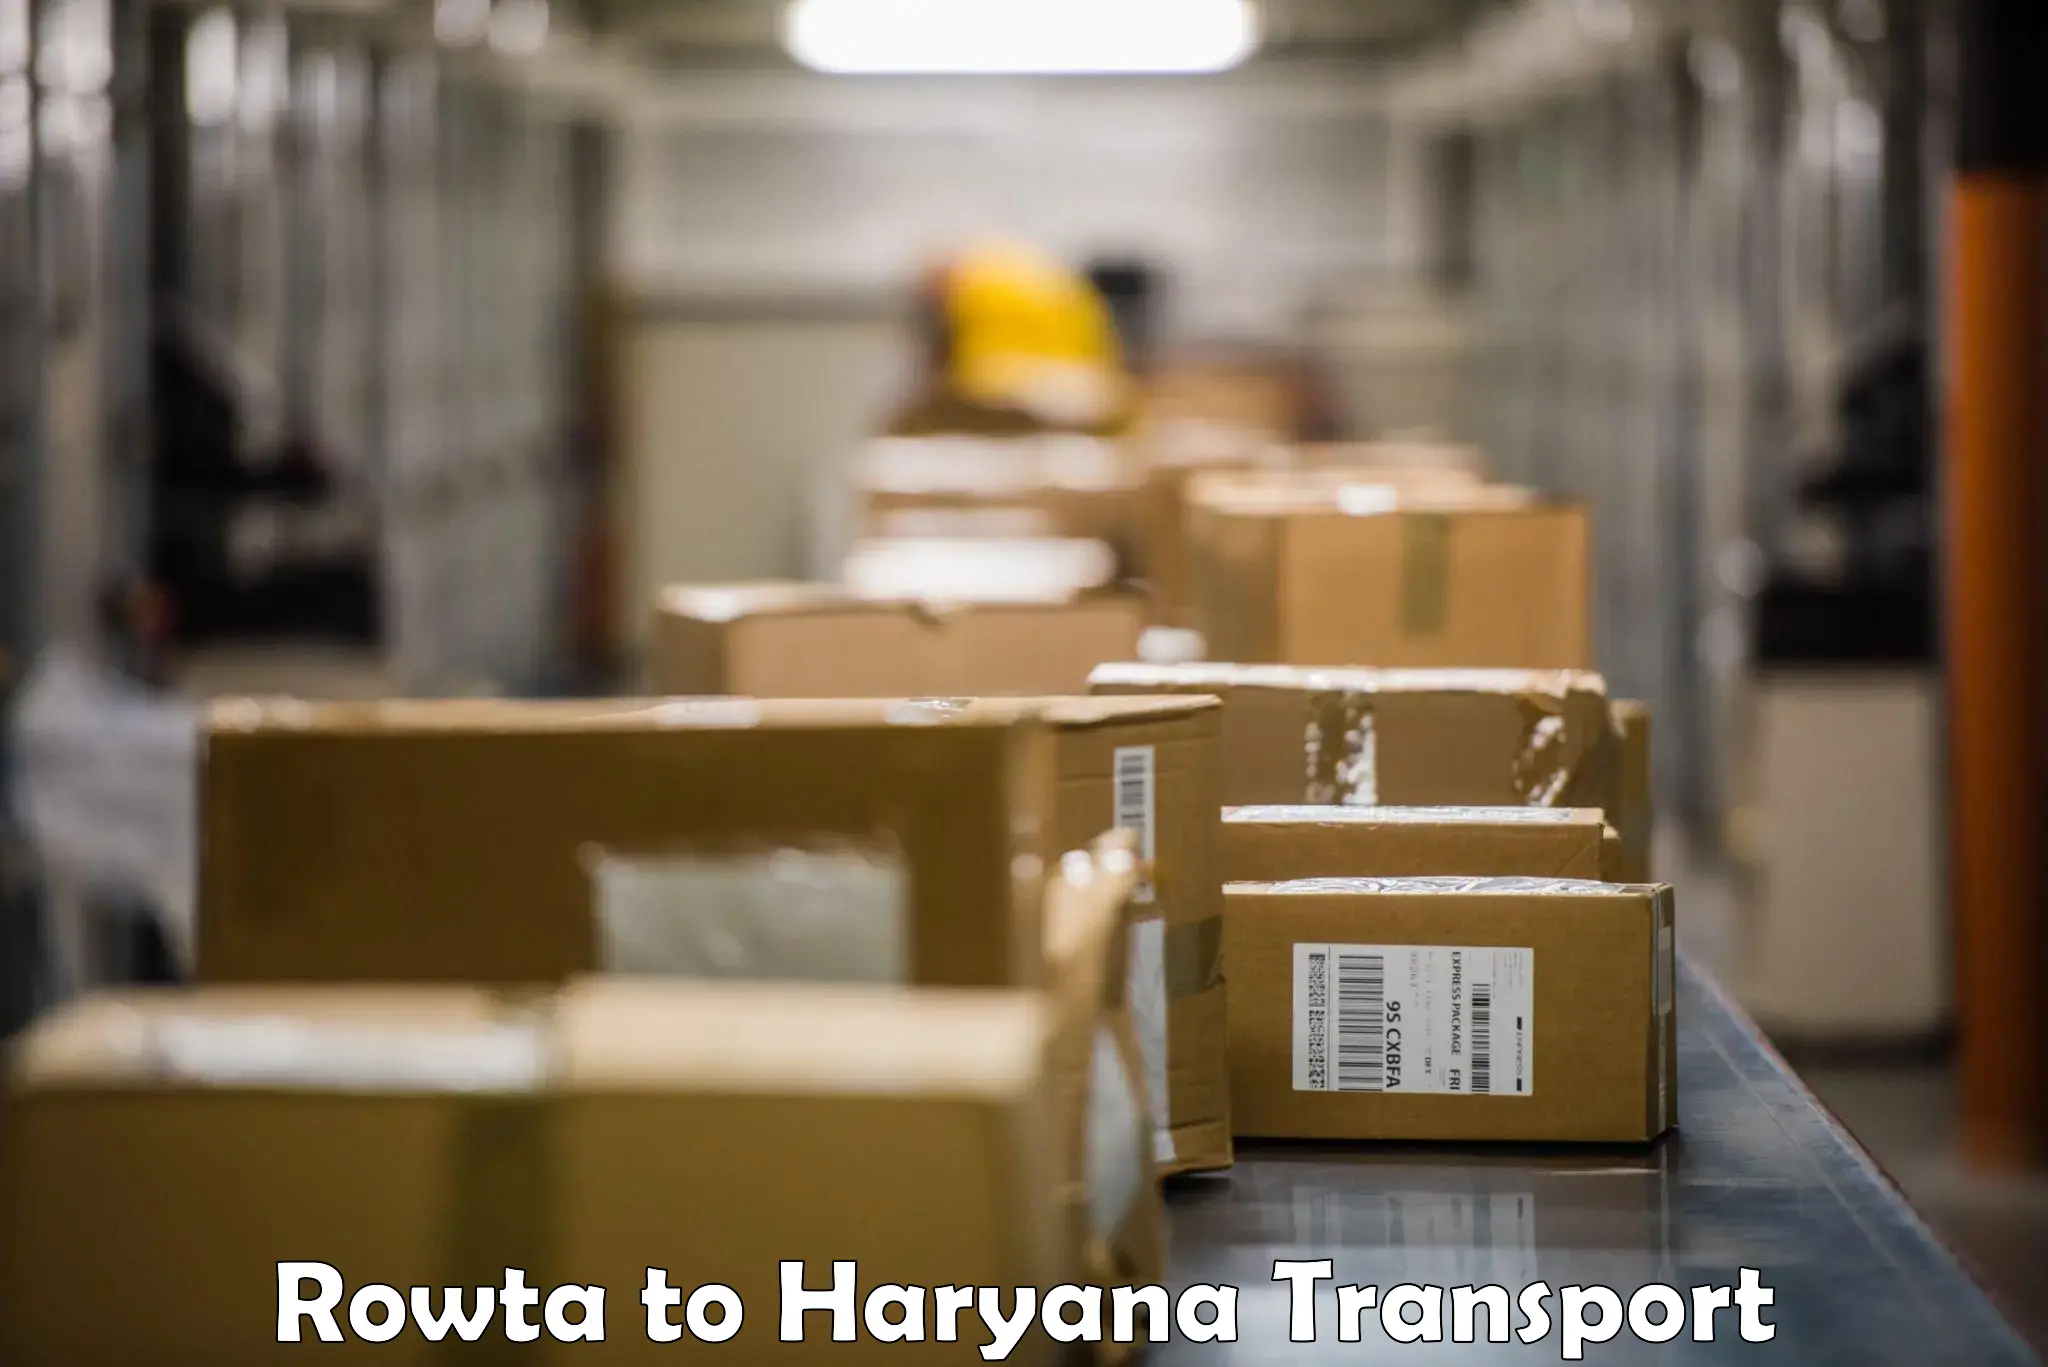 Transport in sharing Rowta to Chaudhary Charan Singh Haryana Agricultural University Hisar